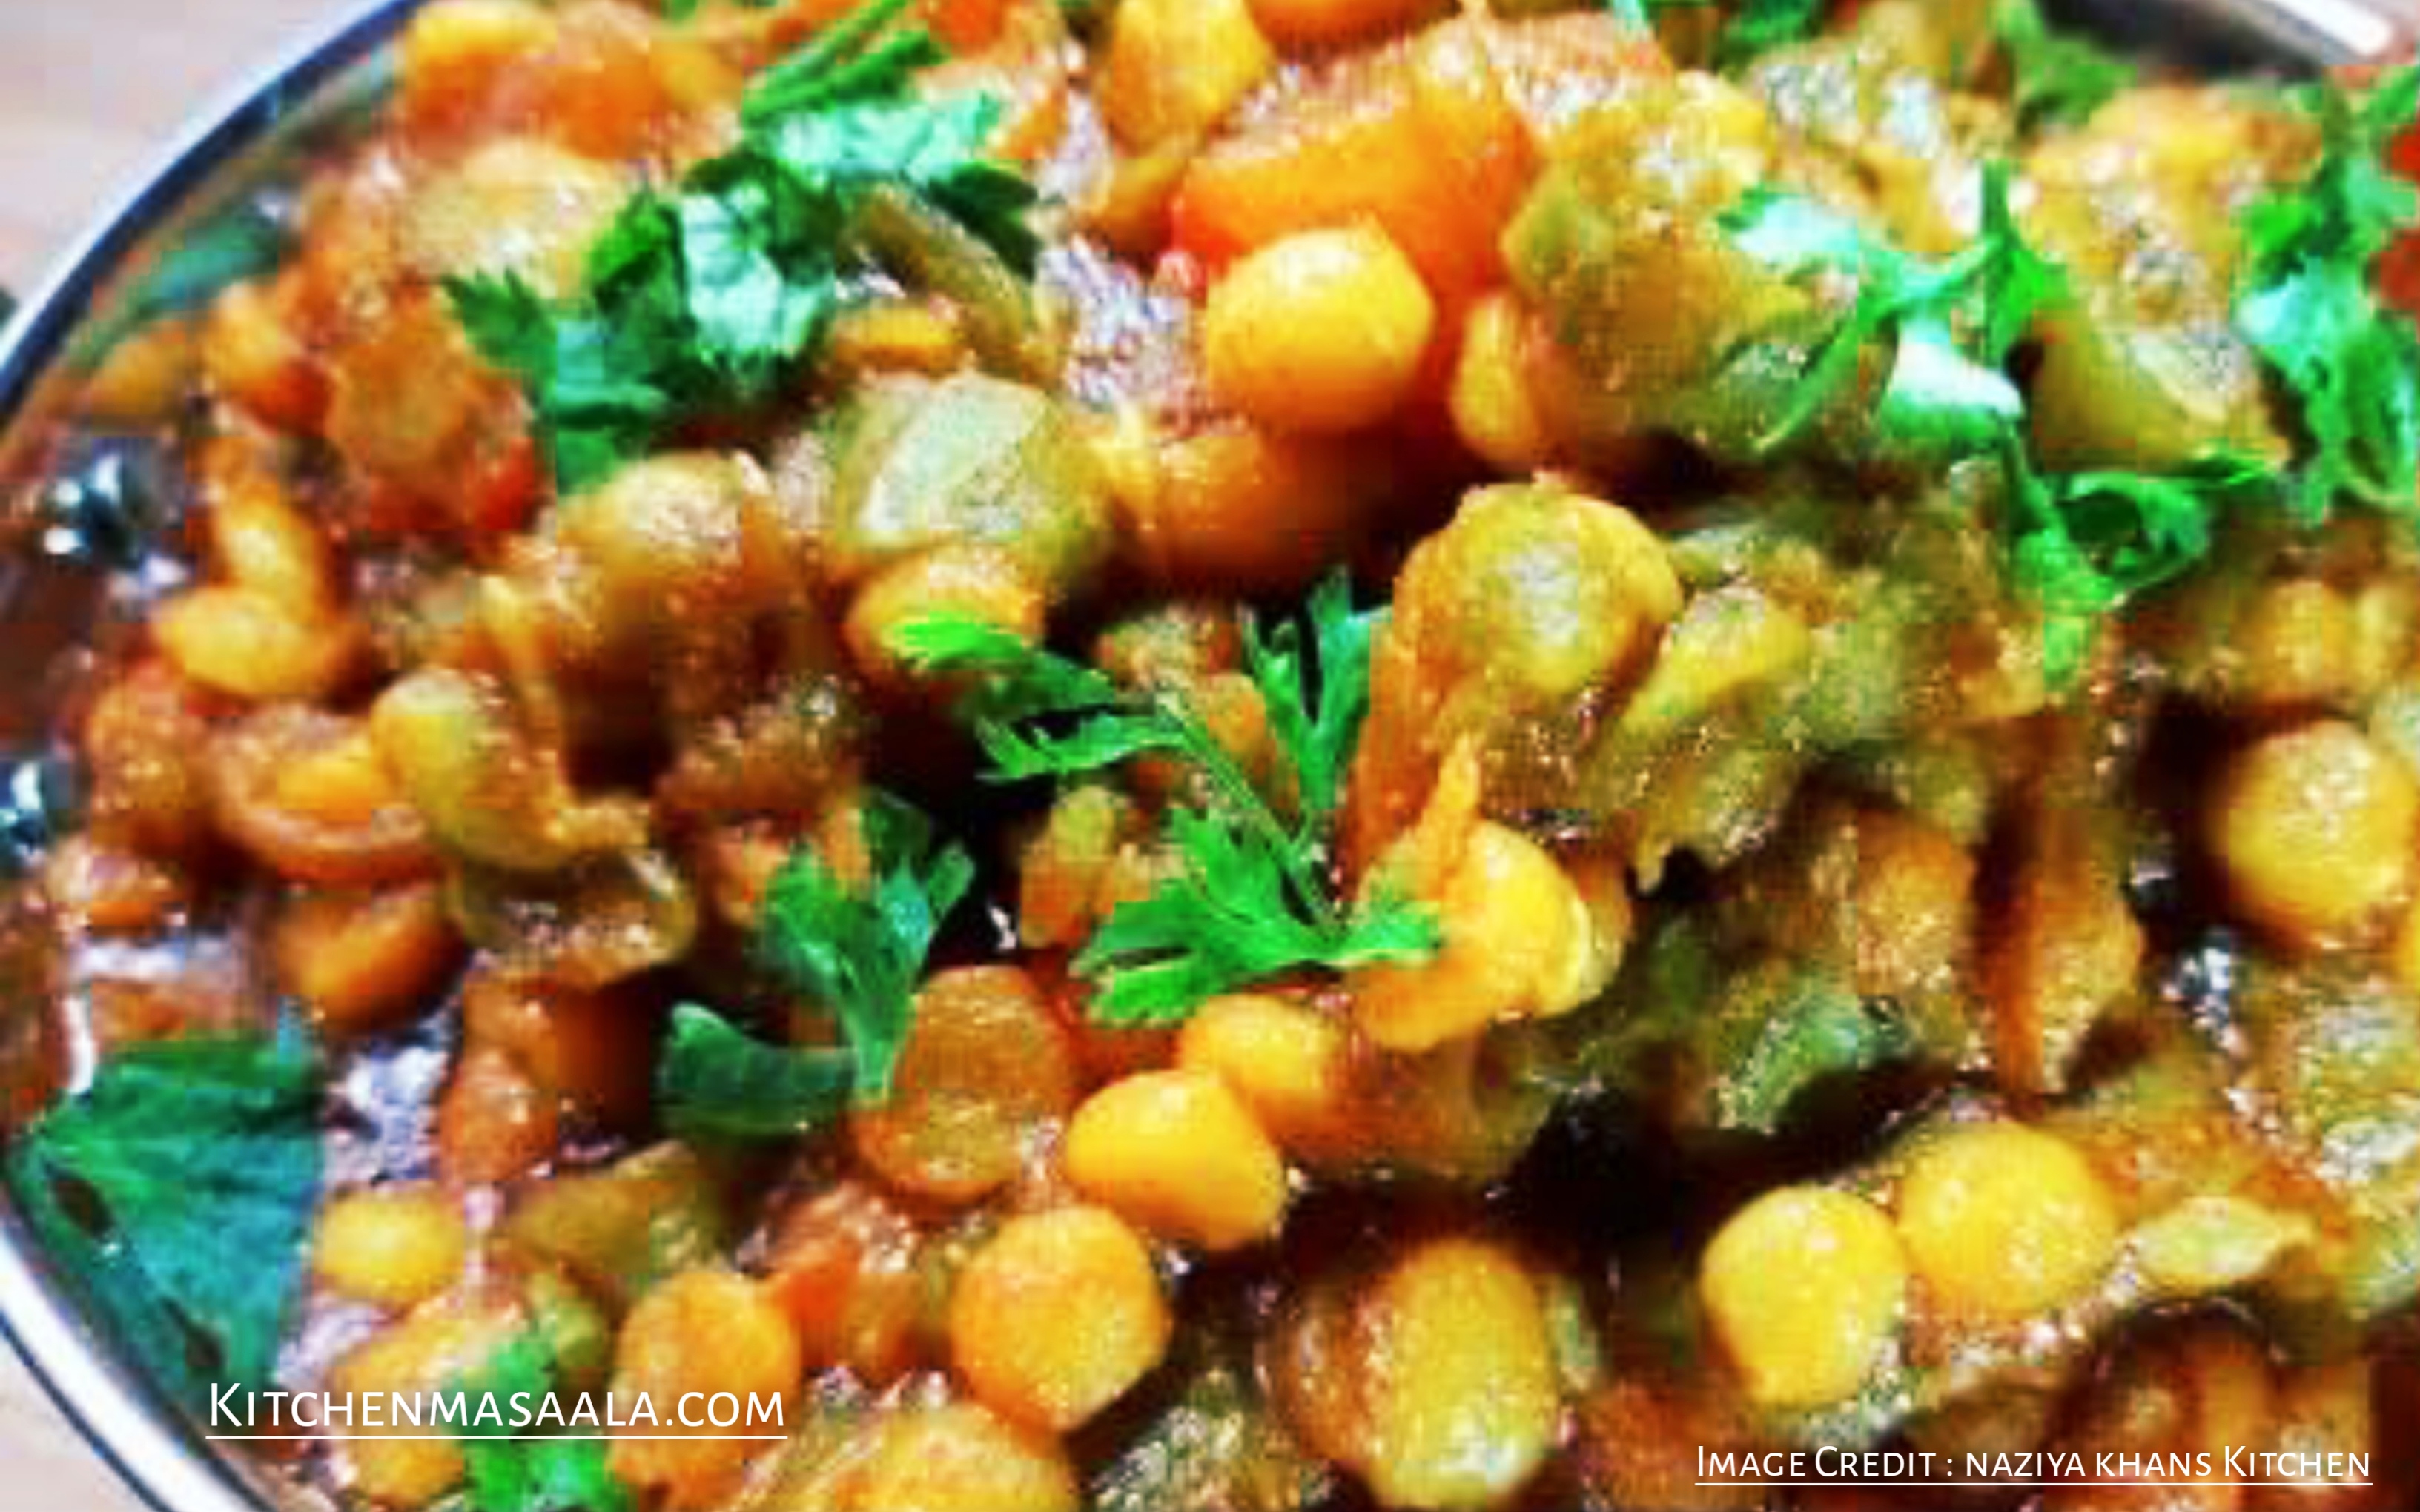 तोरई और चने की दाल की सब्जी || Torai chana dal ki sabji recipe in Hindi, Torai chana dal ki sabji image